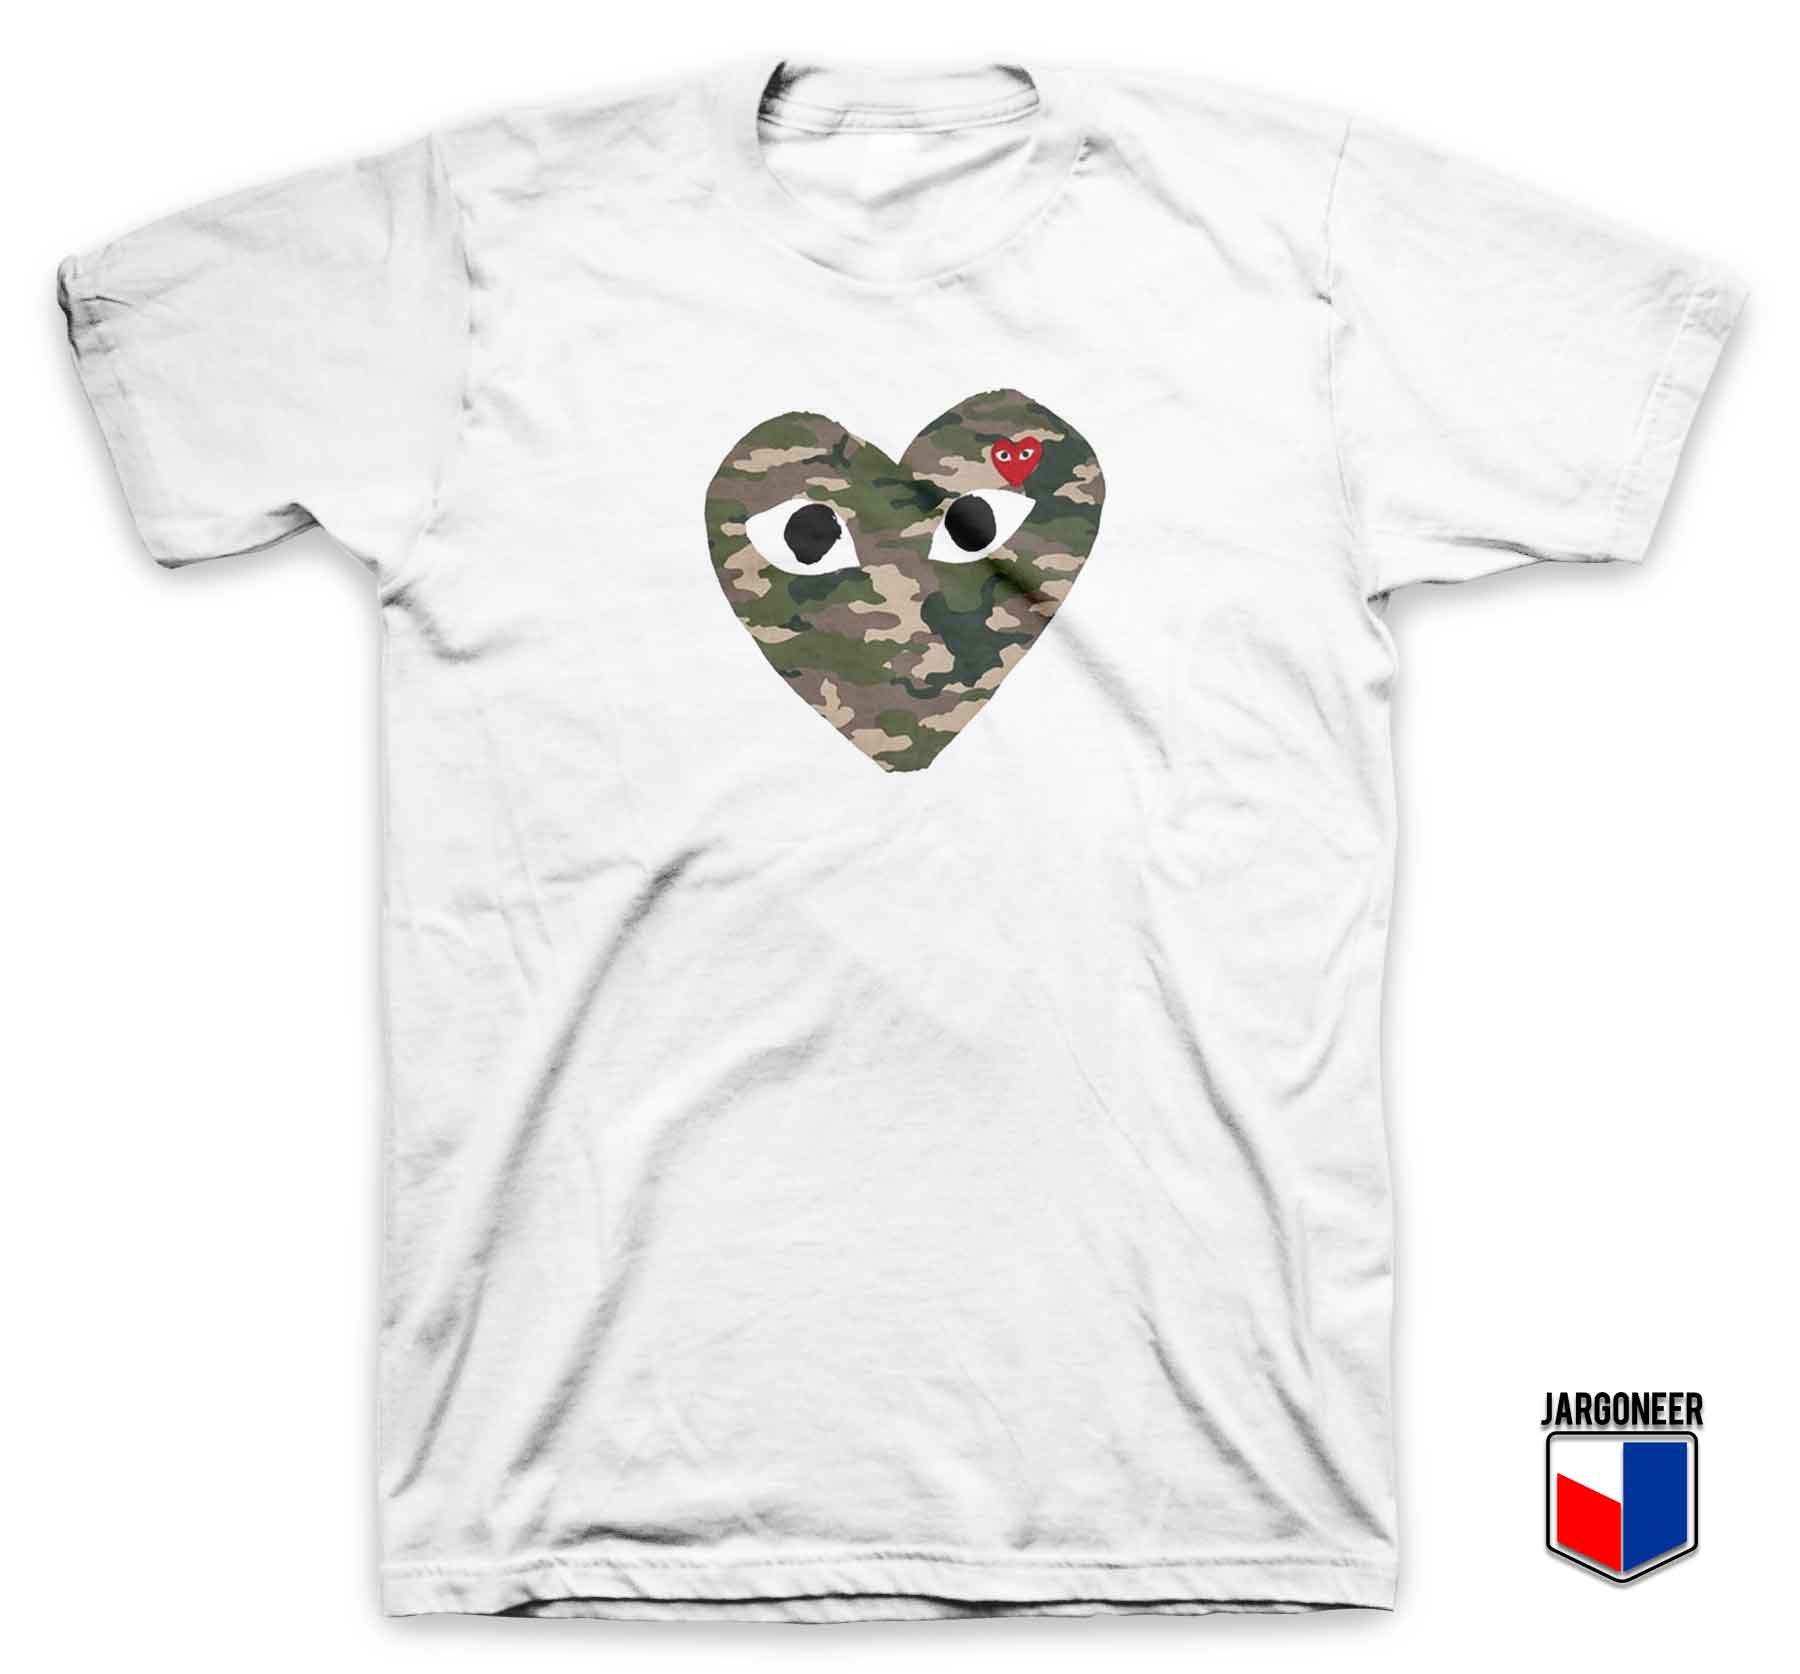 Love Camo - Shop Unique Graphic Cool Shirt Designs